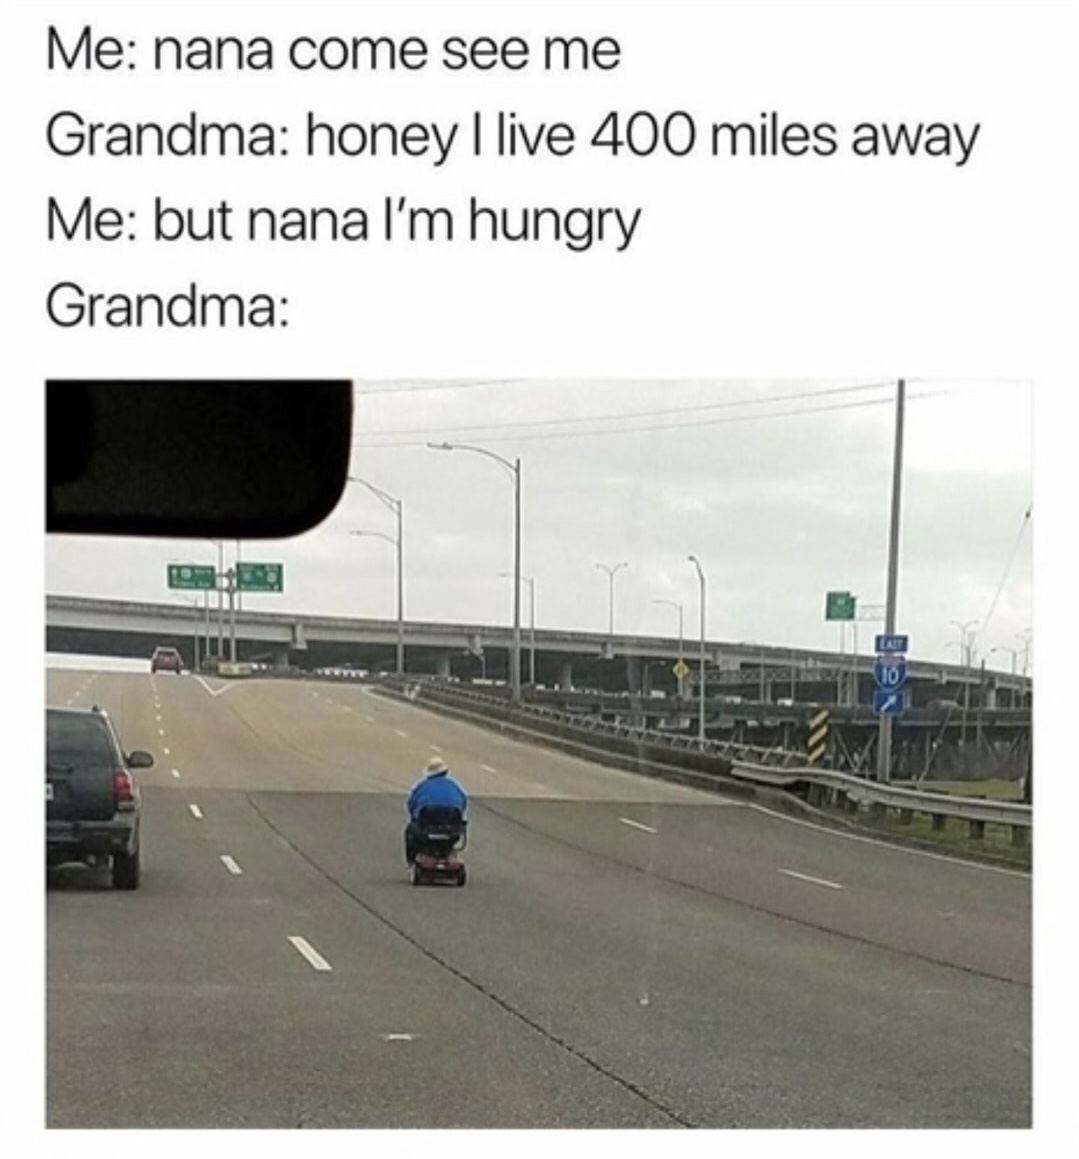 grandma i m hungry meme - Me nana come see me Grandma honey I live 400 miles away Me but nana I'm hungry Grandma Cuba